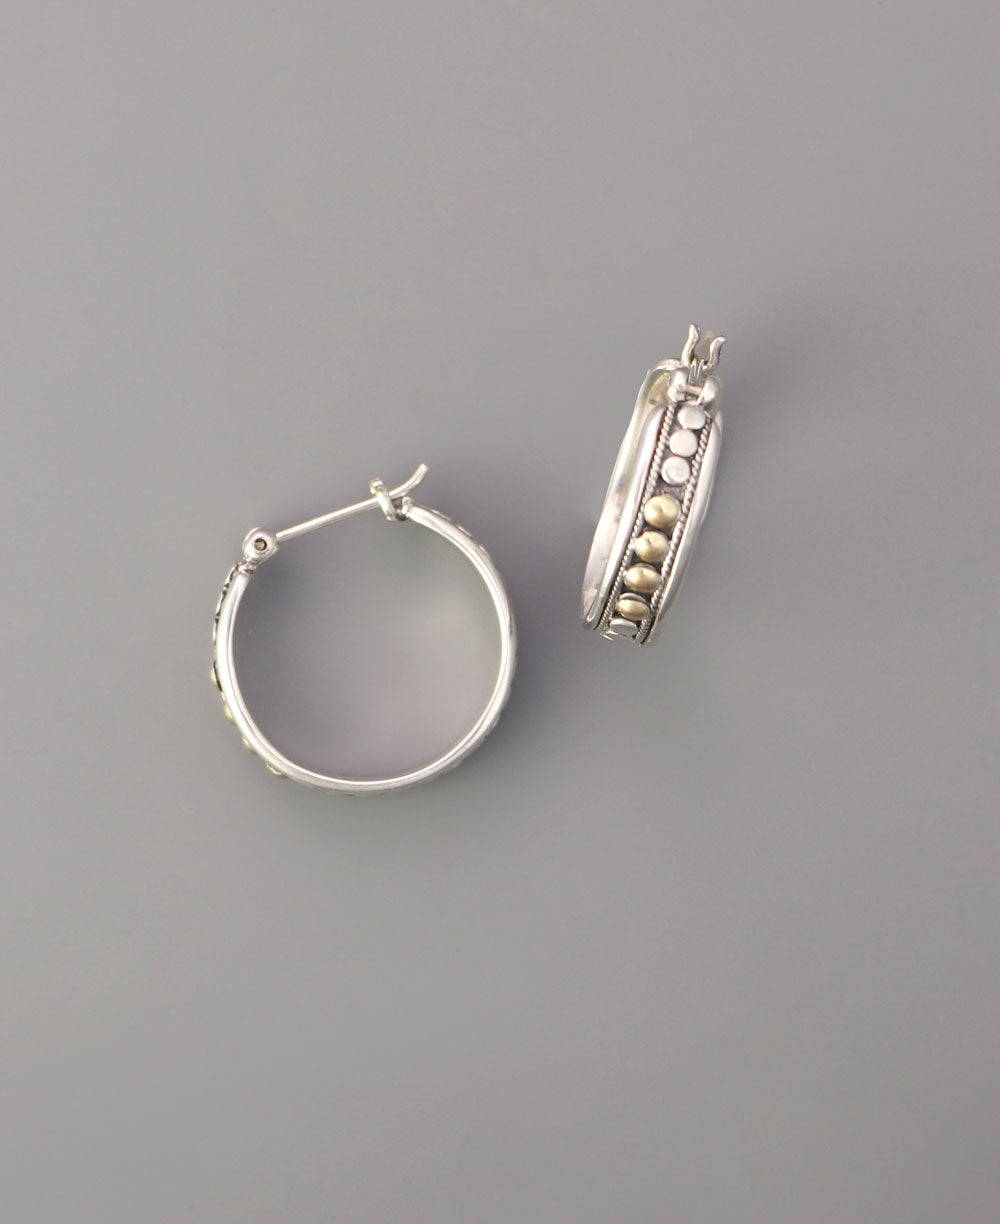 Small sterling silver hoop earrings